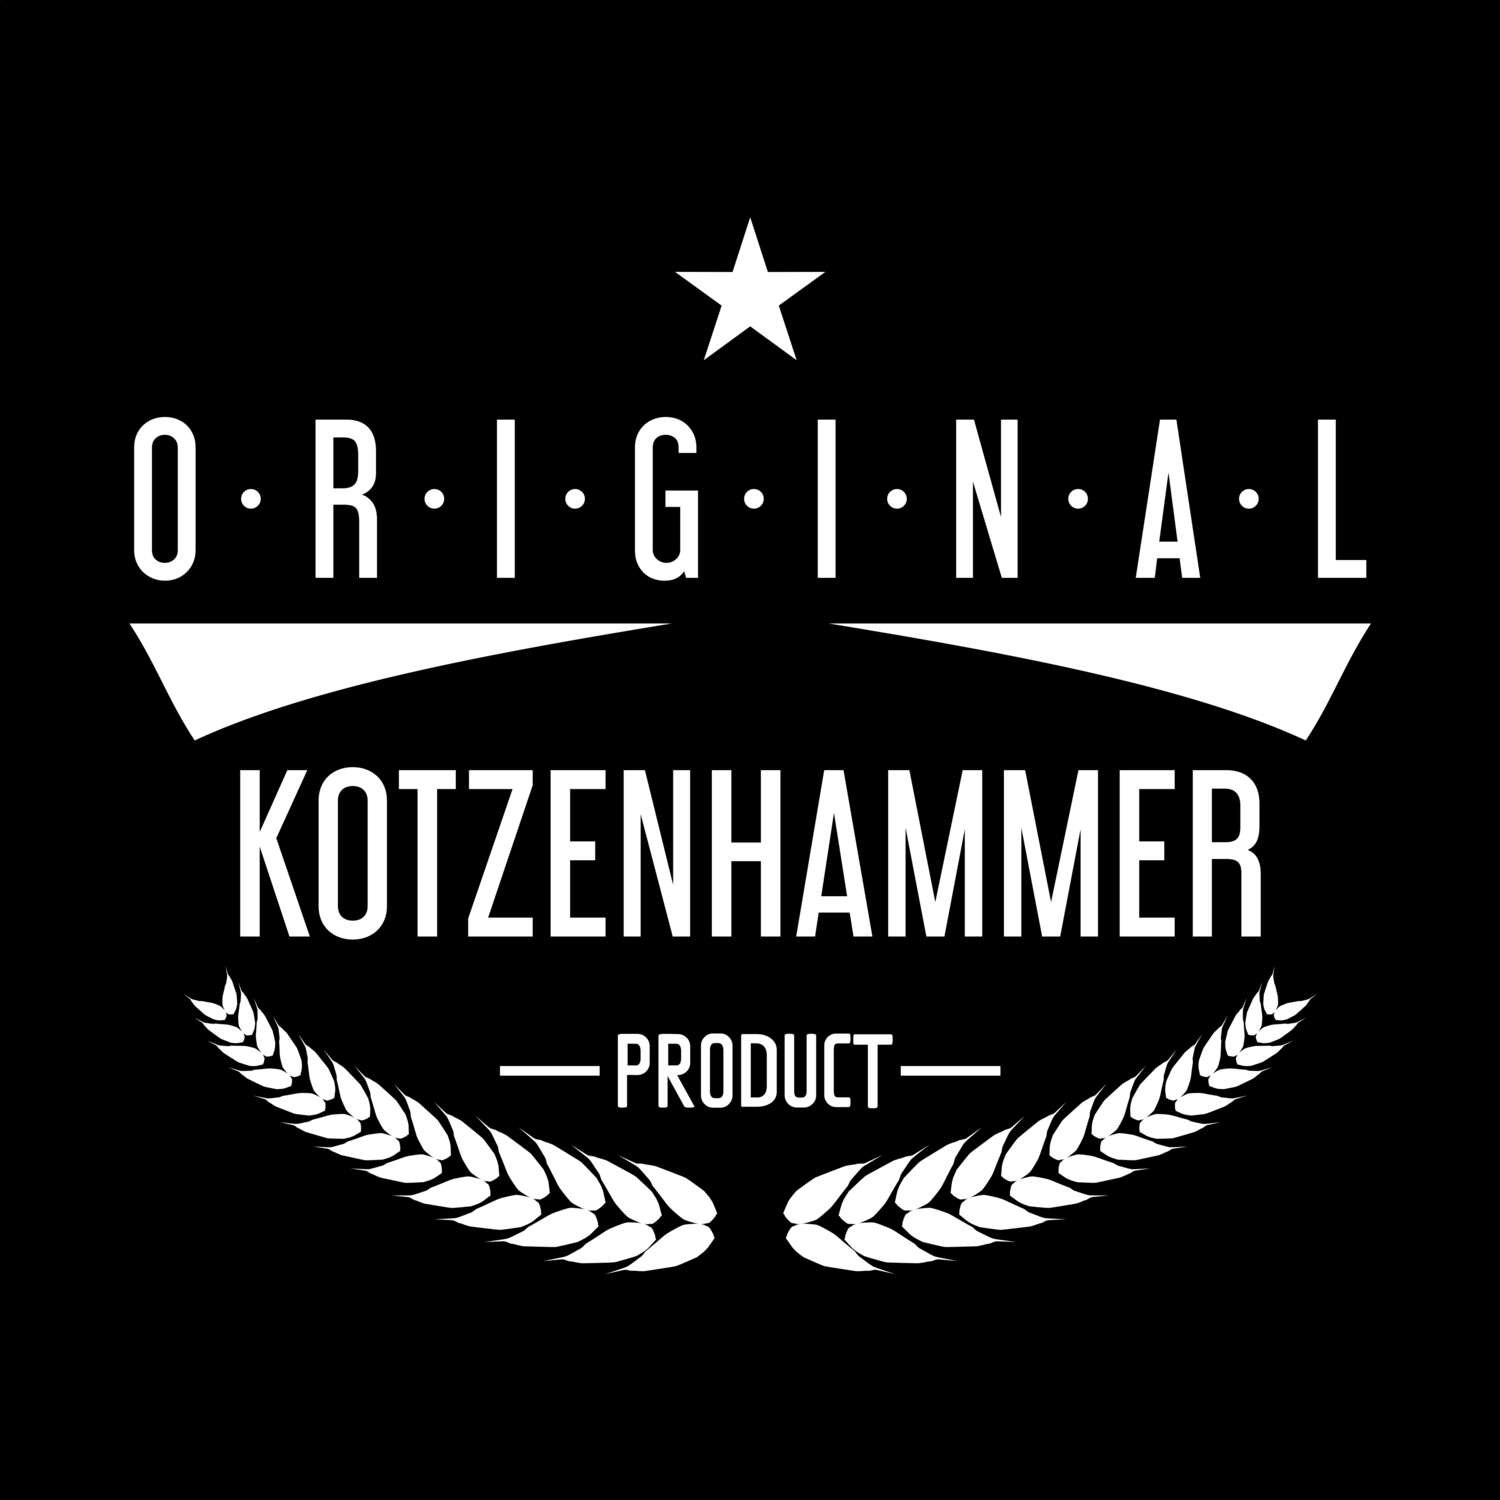 Kotzenhammer T-Shirt »Original Product«